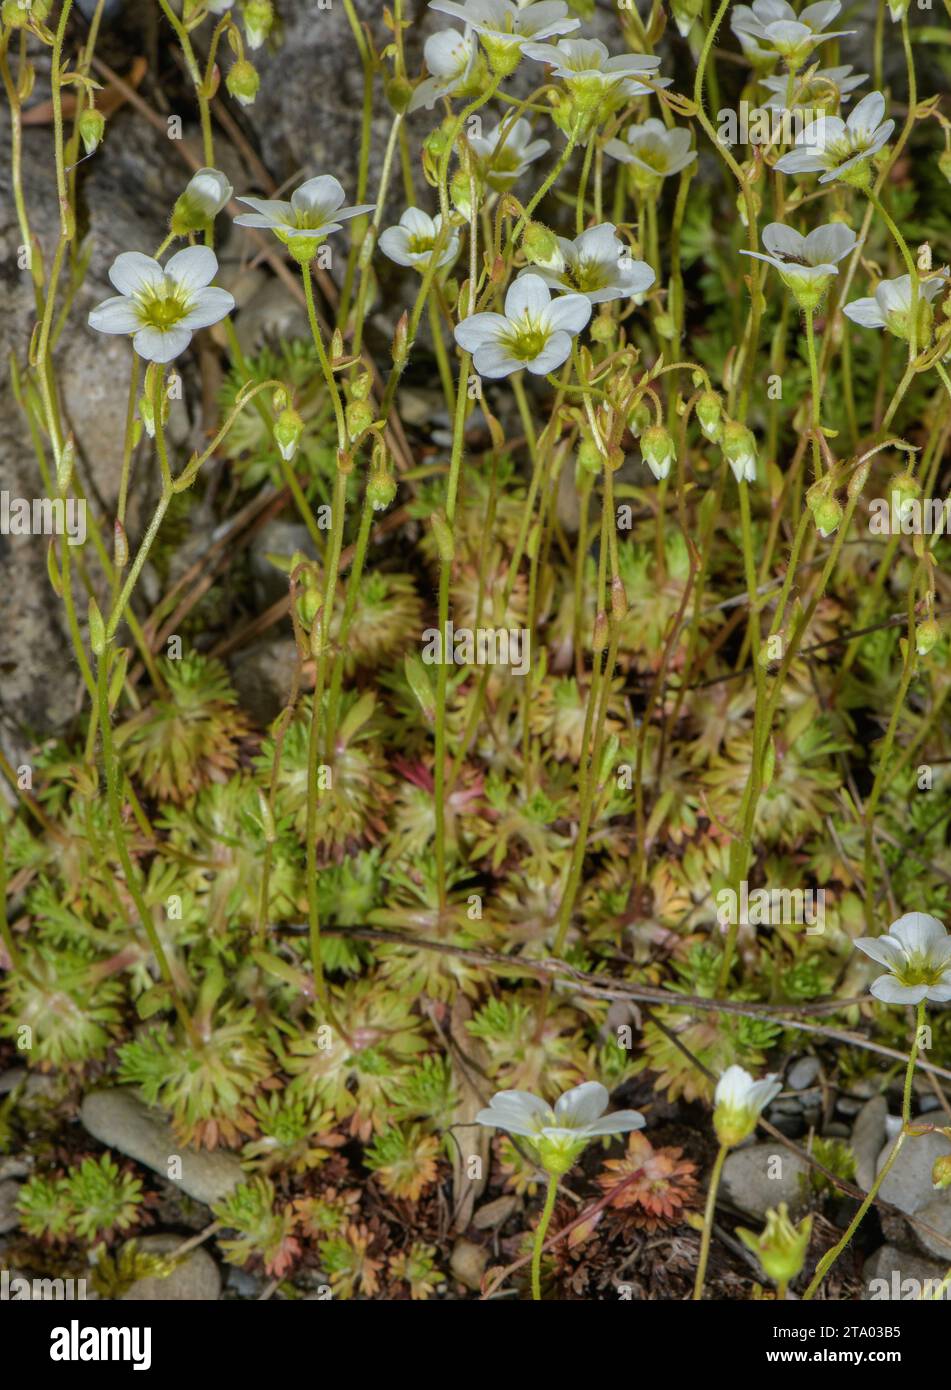 Mossy Saxifrage, Saxifraga hypnoides, in flower on limestone. Stock Photo